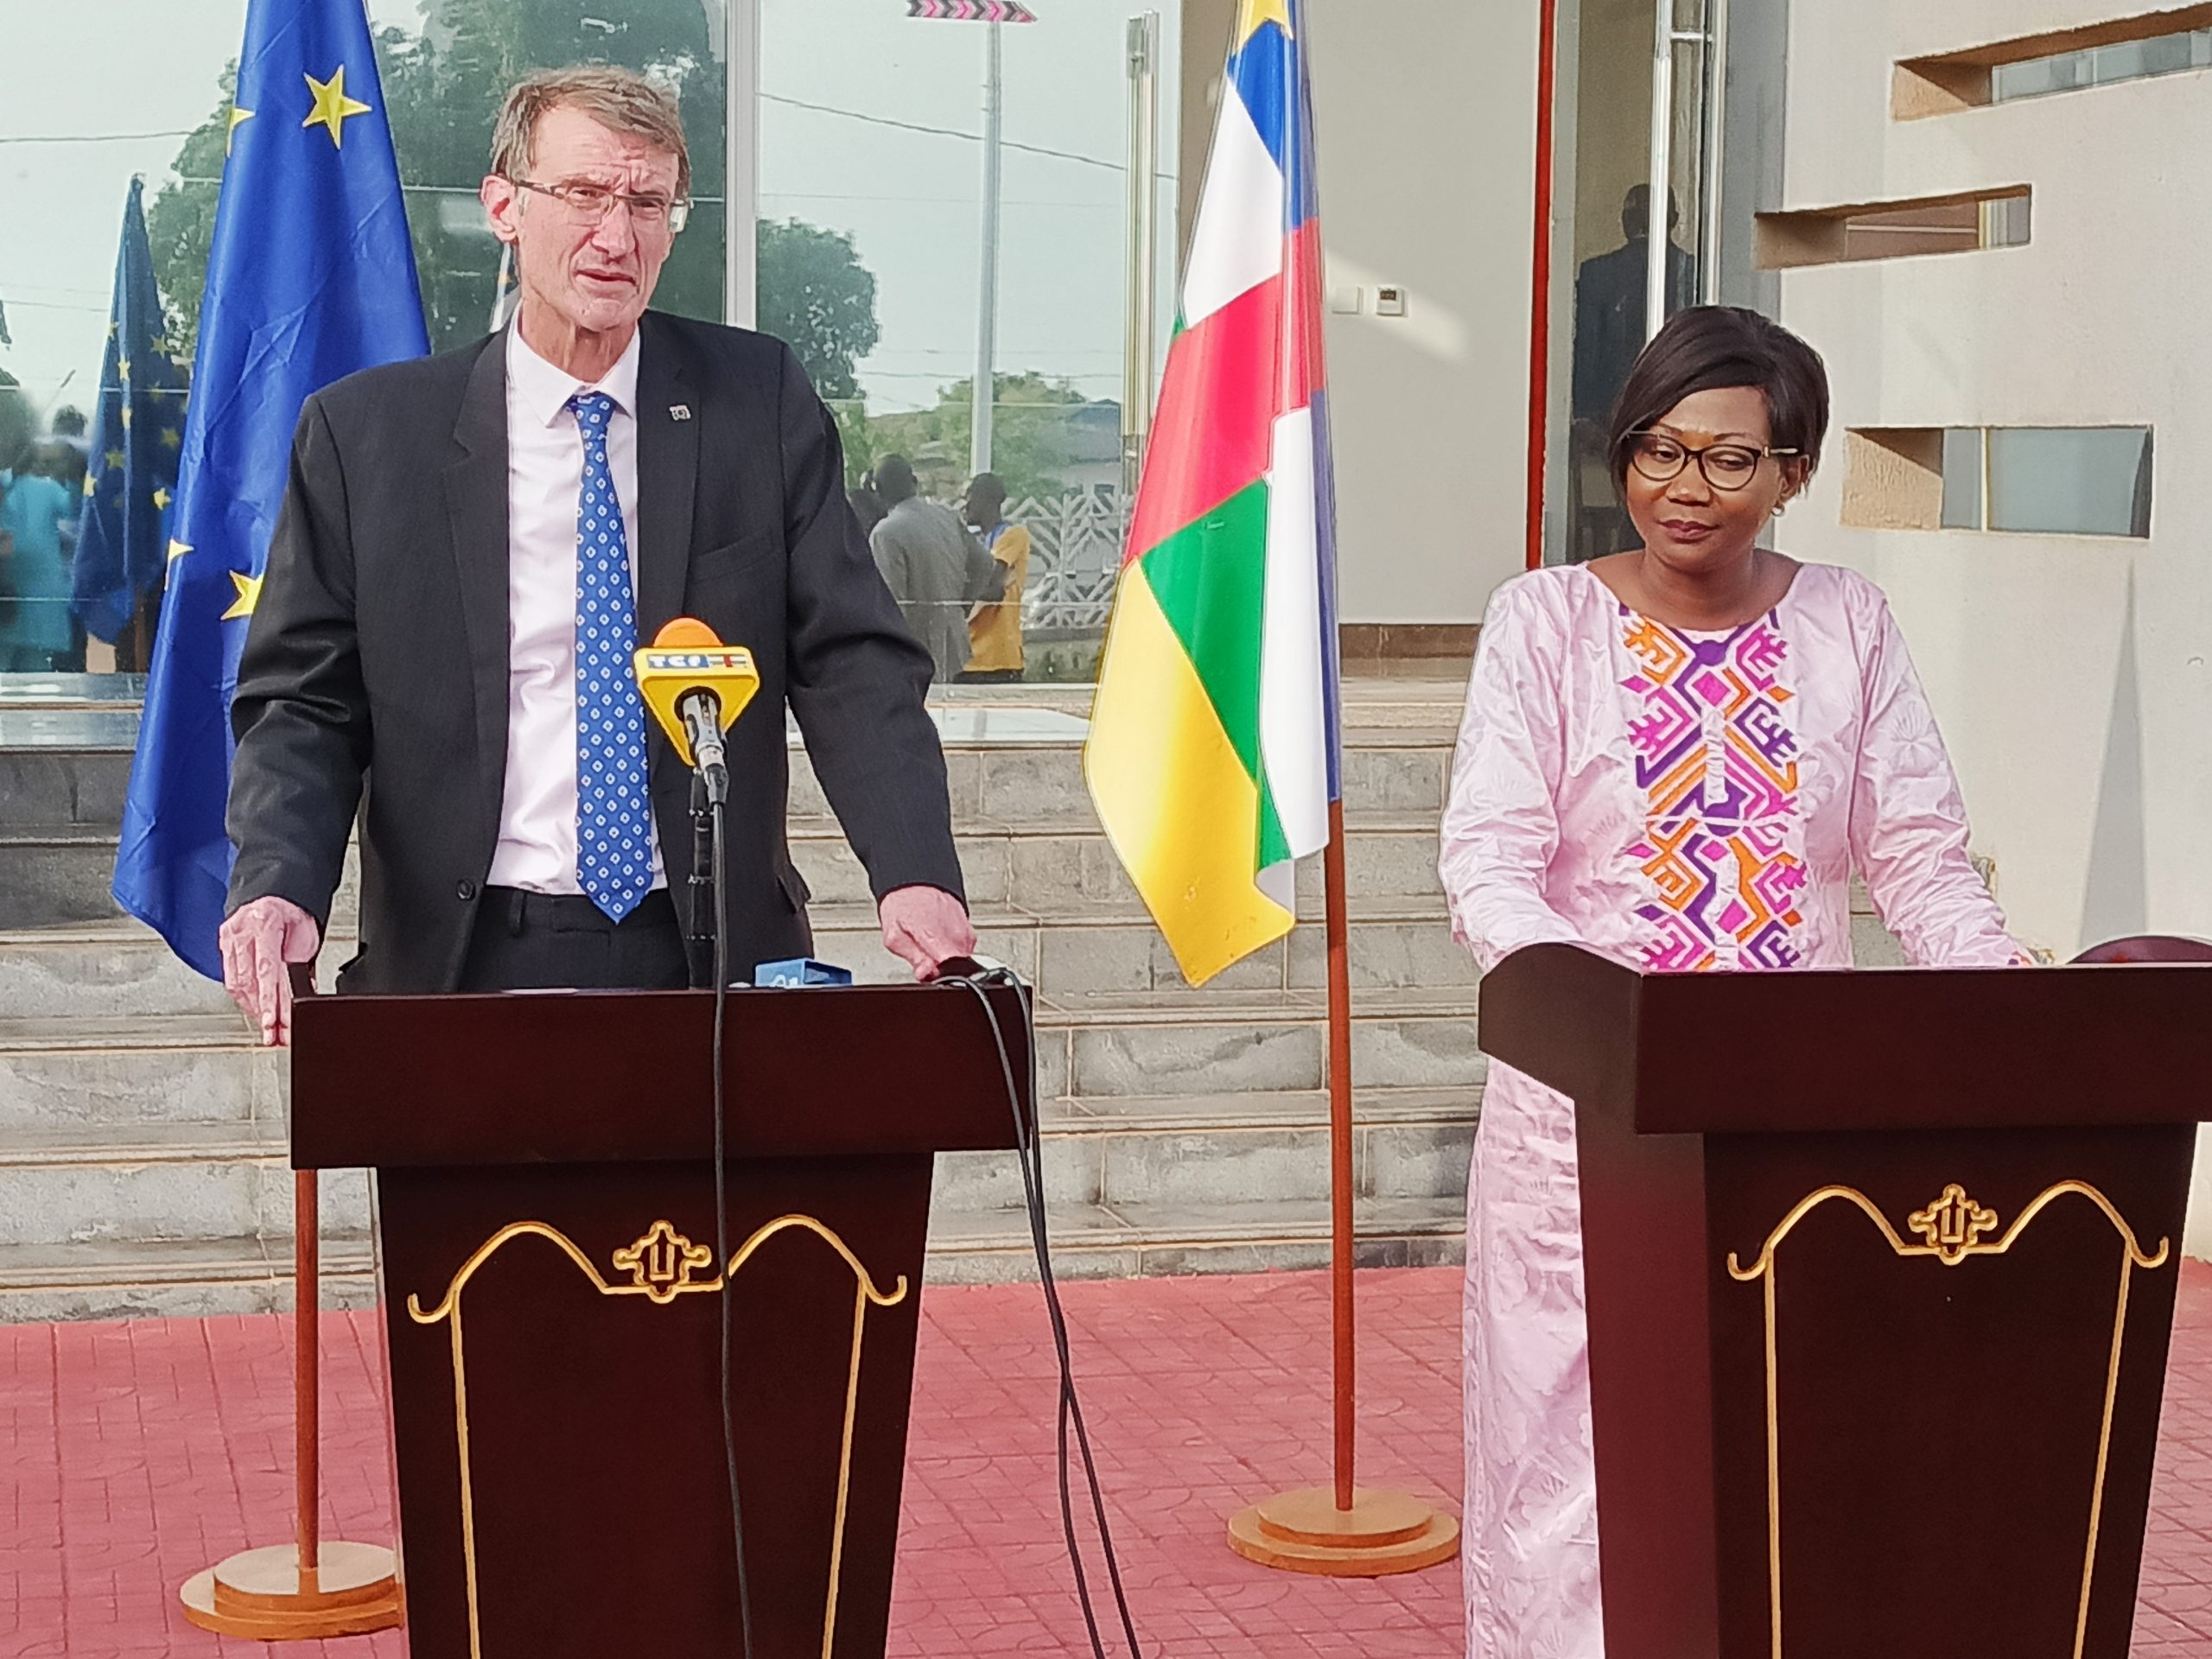 Centrafrique : l’UE et le gouvernement centrafricain relancent leur coopération sur de bonnes bases